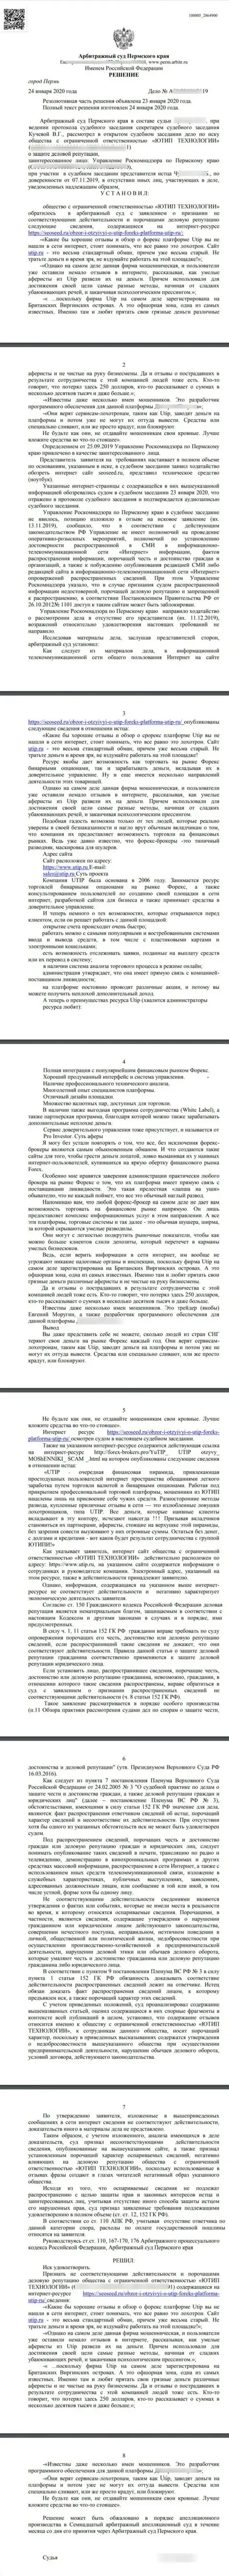 Судебный иск воров ЮТИП Ру в адрес сайта seoseed ru, который удовлетворен самым гуманным судом